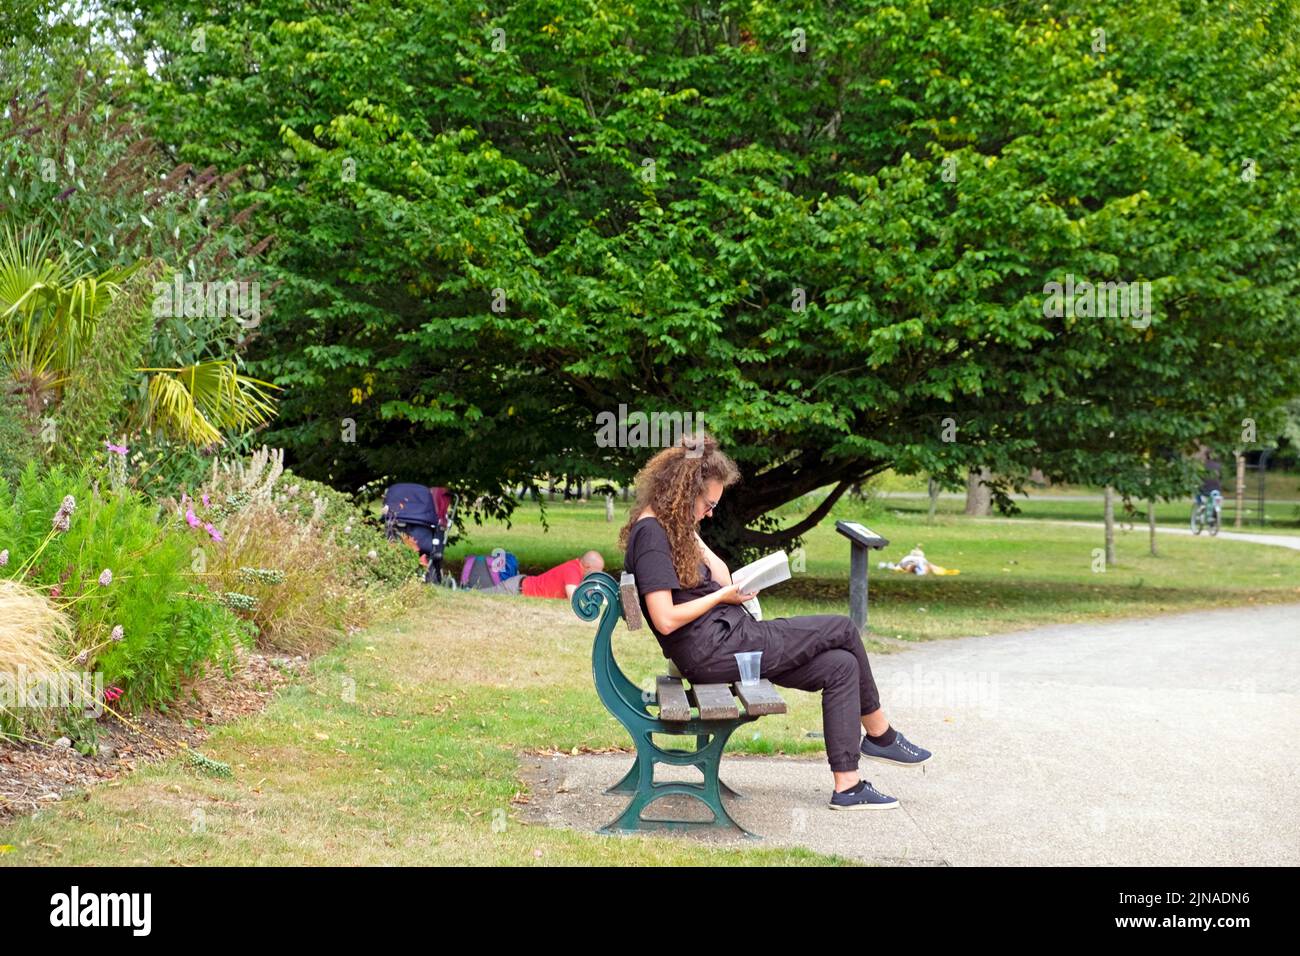 Jeune femme assise sur le banc du parc lisant un livre par des arbres en été août 2022 Bute Park Cardiff pays de Galles Royaume-Uni Grande-Bretagne KATHY DEWITT Banque D'Images